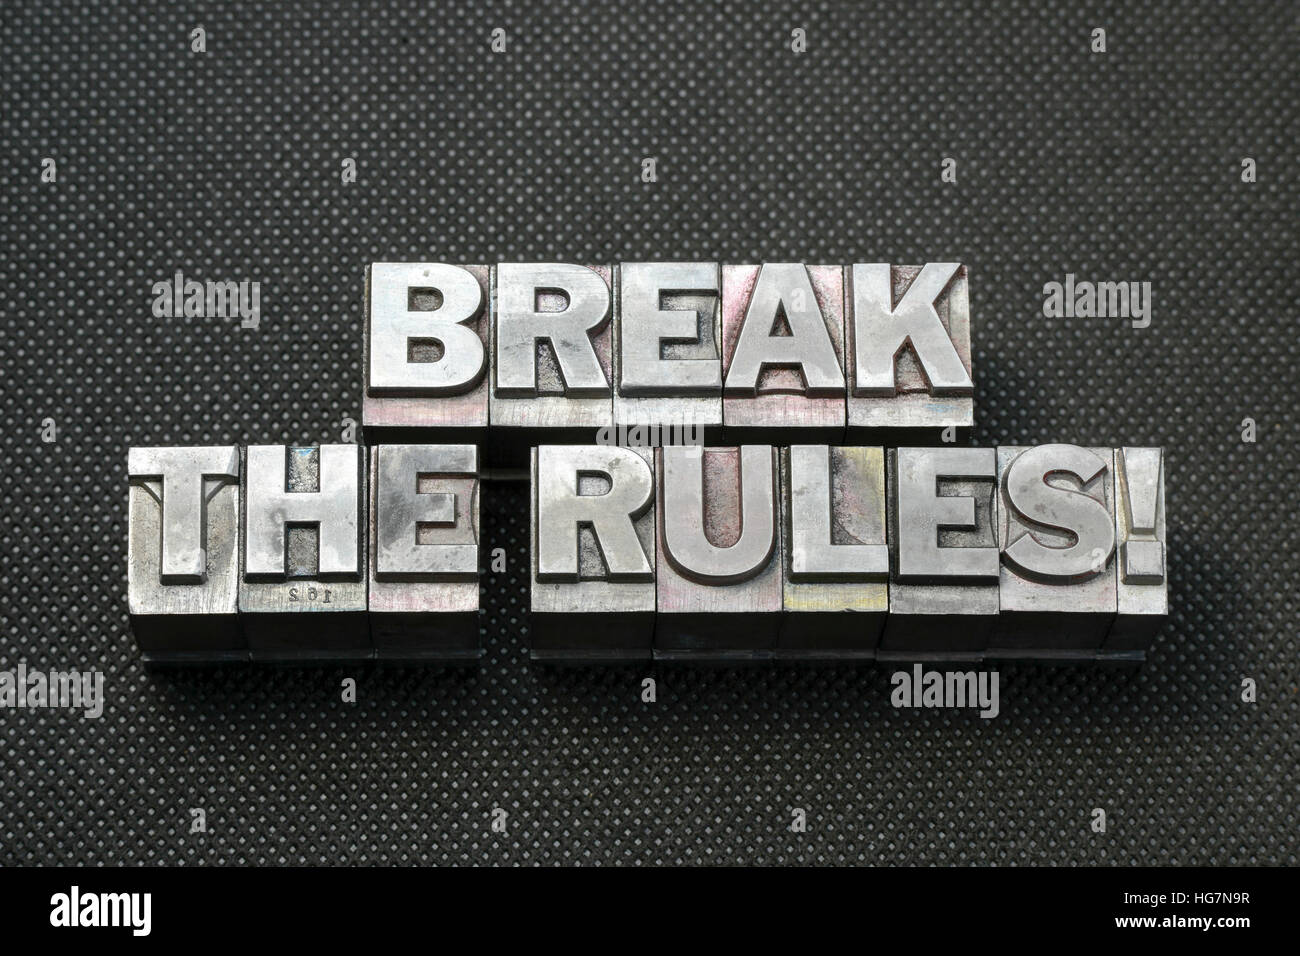 brechen Sie die Regeln Phrase aus metallischen Buchdruck Blöcke auf schwarze gelochte Oberfläche hergestellt Stockfoto